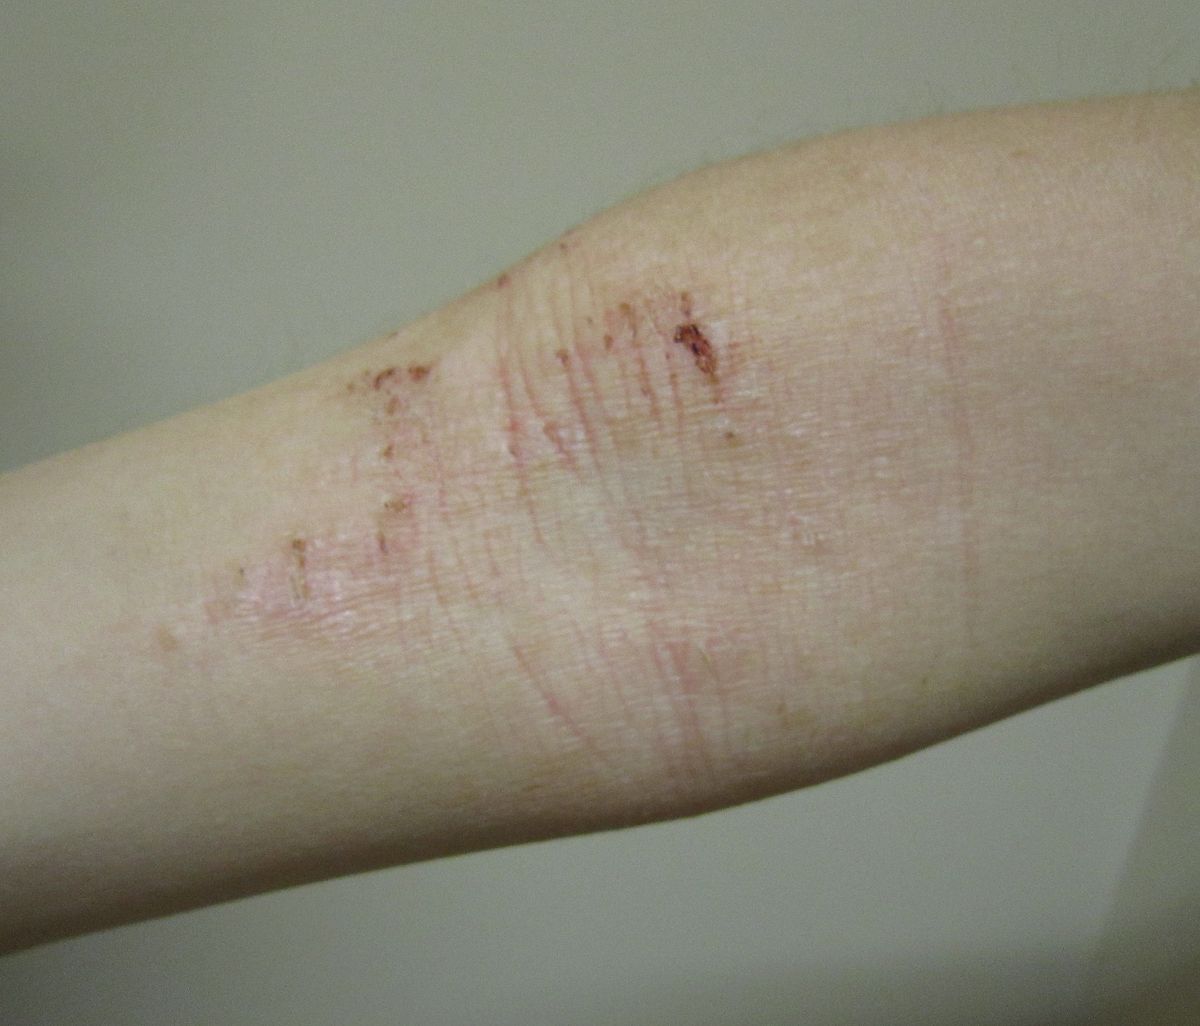 atopic dermatitis pictures vélemények a pikkelysmr kezelsrl